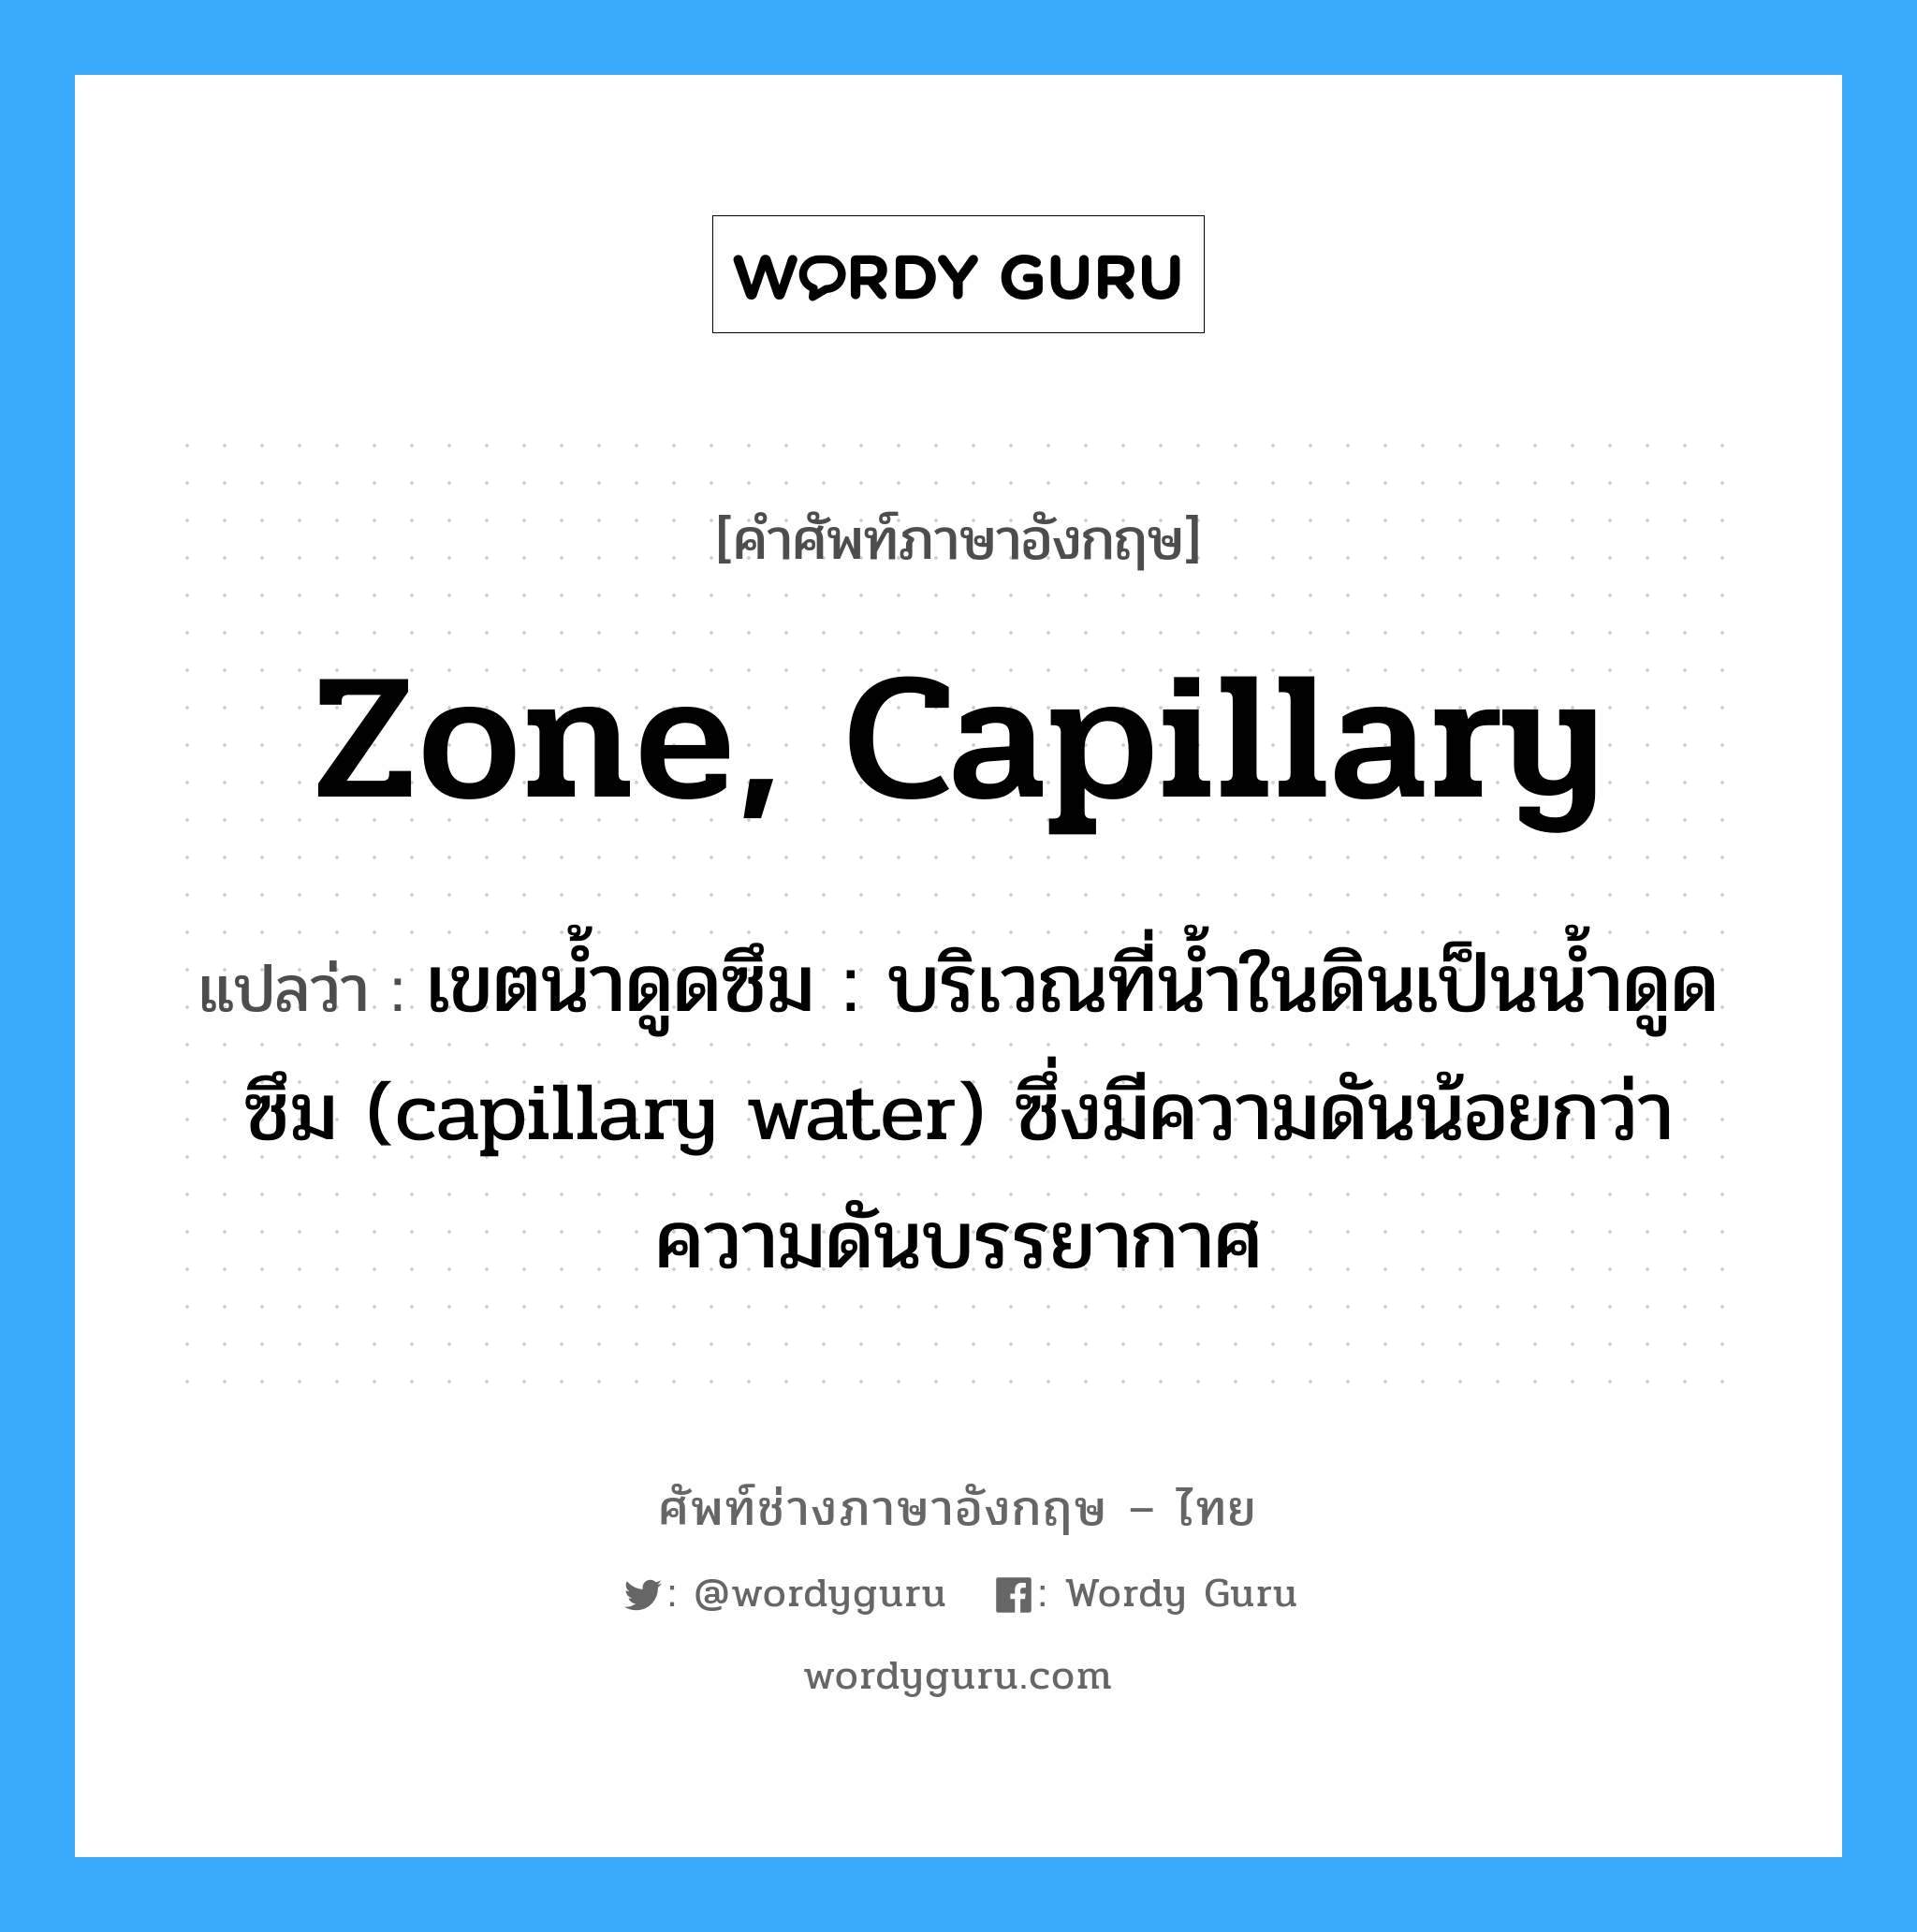 zone, capillary แปลว่า?, คำศัพท์ช่างภาษาอังกฤษ - ไทย zone, capillary คำศัพท์ภาษาอังกฤษ zone, capillary แปลว่า เขตน้ำดูดซึม : บริเวณที่น้ำในดินเป็นน้ำดูดซึม (capillary water) ซึ่งมีความดันน้อยกว่าความดันบรรยากาศ